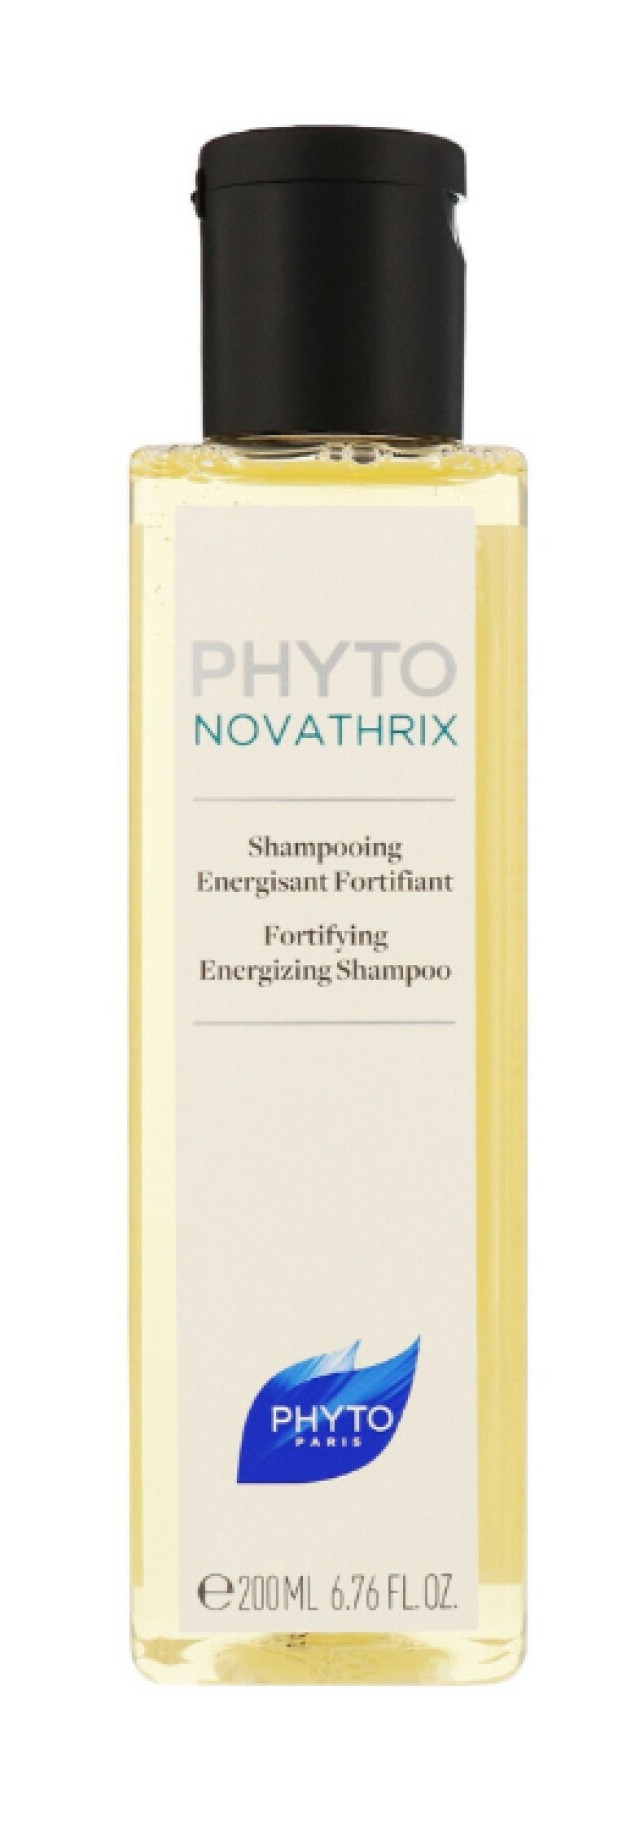 Phyto Phytonovathrix Fortifying Energizing Shampoo Δυναμωτικό Τονωτικό Σαμπουάν 200ml